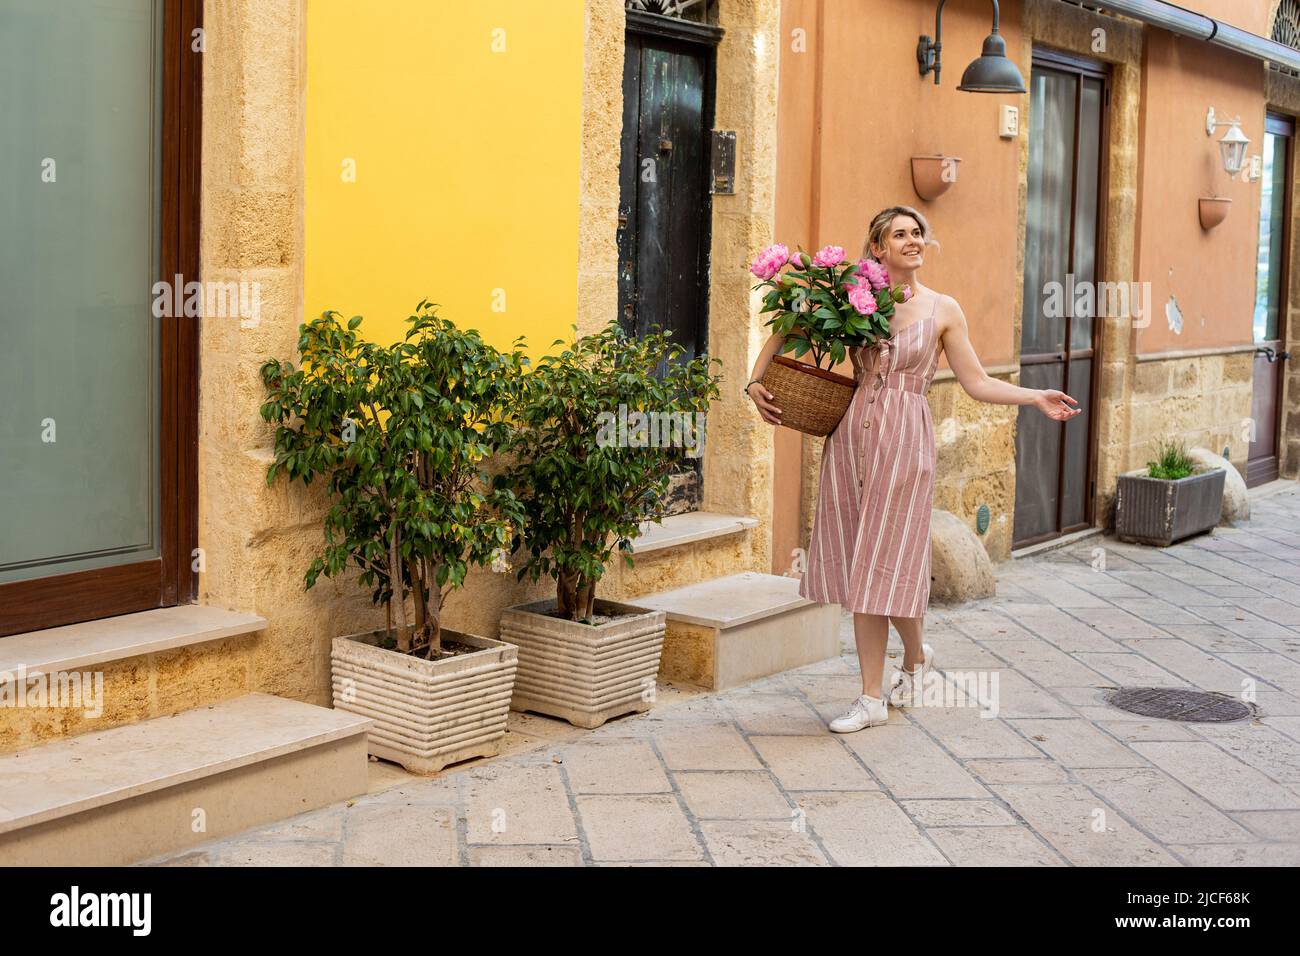 Junge lächelnde Frau im Sommer rosa gestreiften Kleid zu Fuß in der Nähe von Olivenbäumen, hält Topf mit rosa Pfingstrosen Blumen. Stockfoto